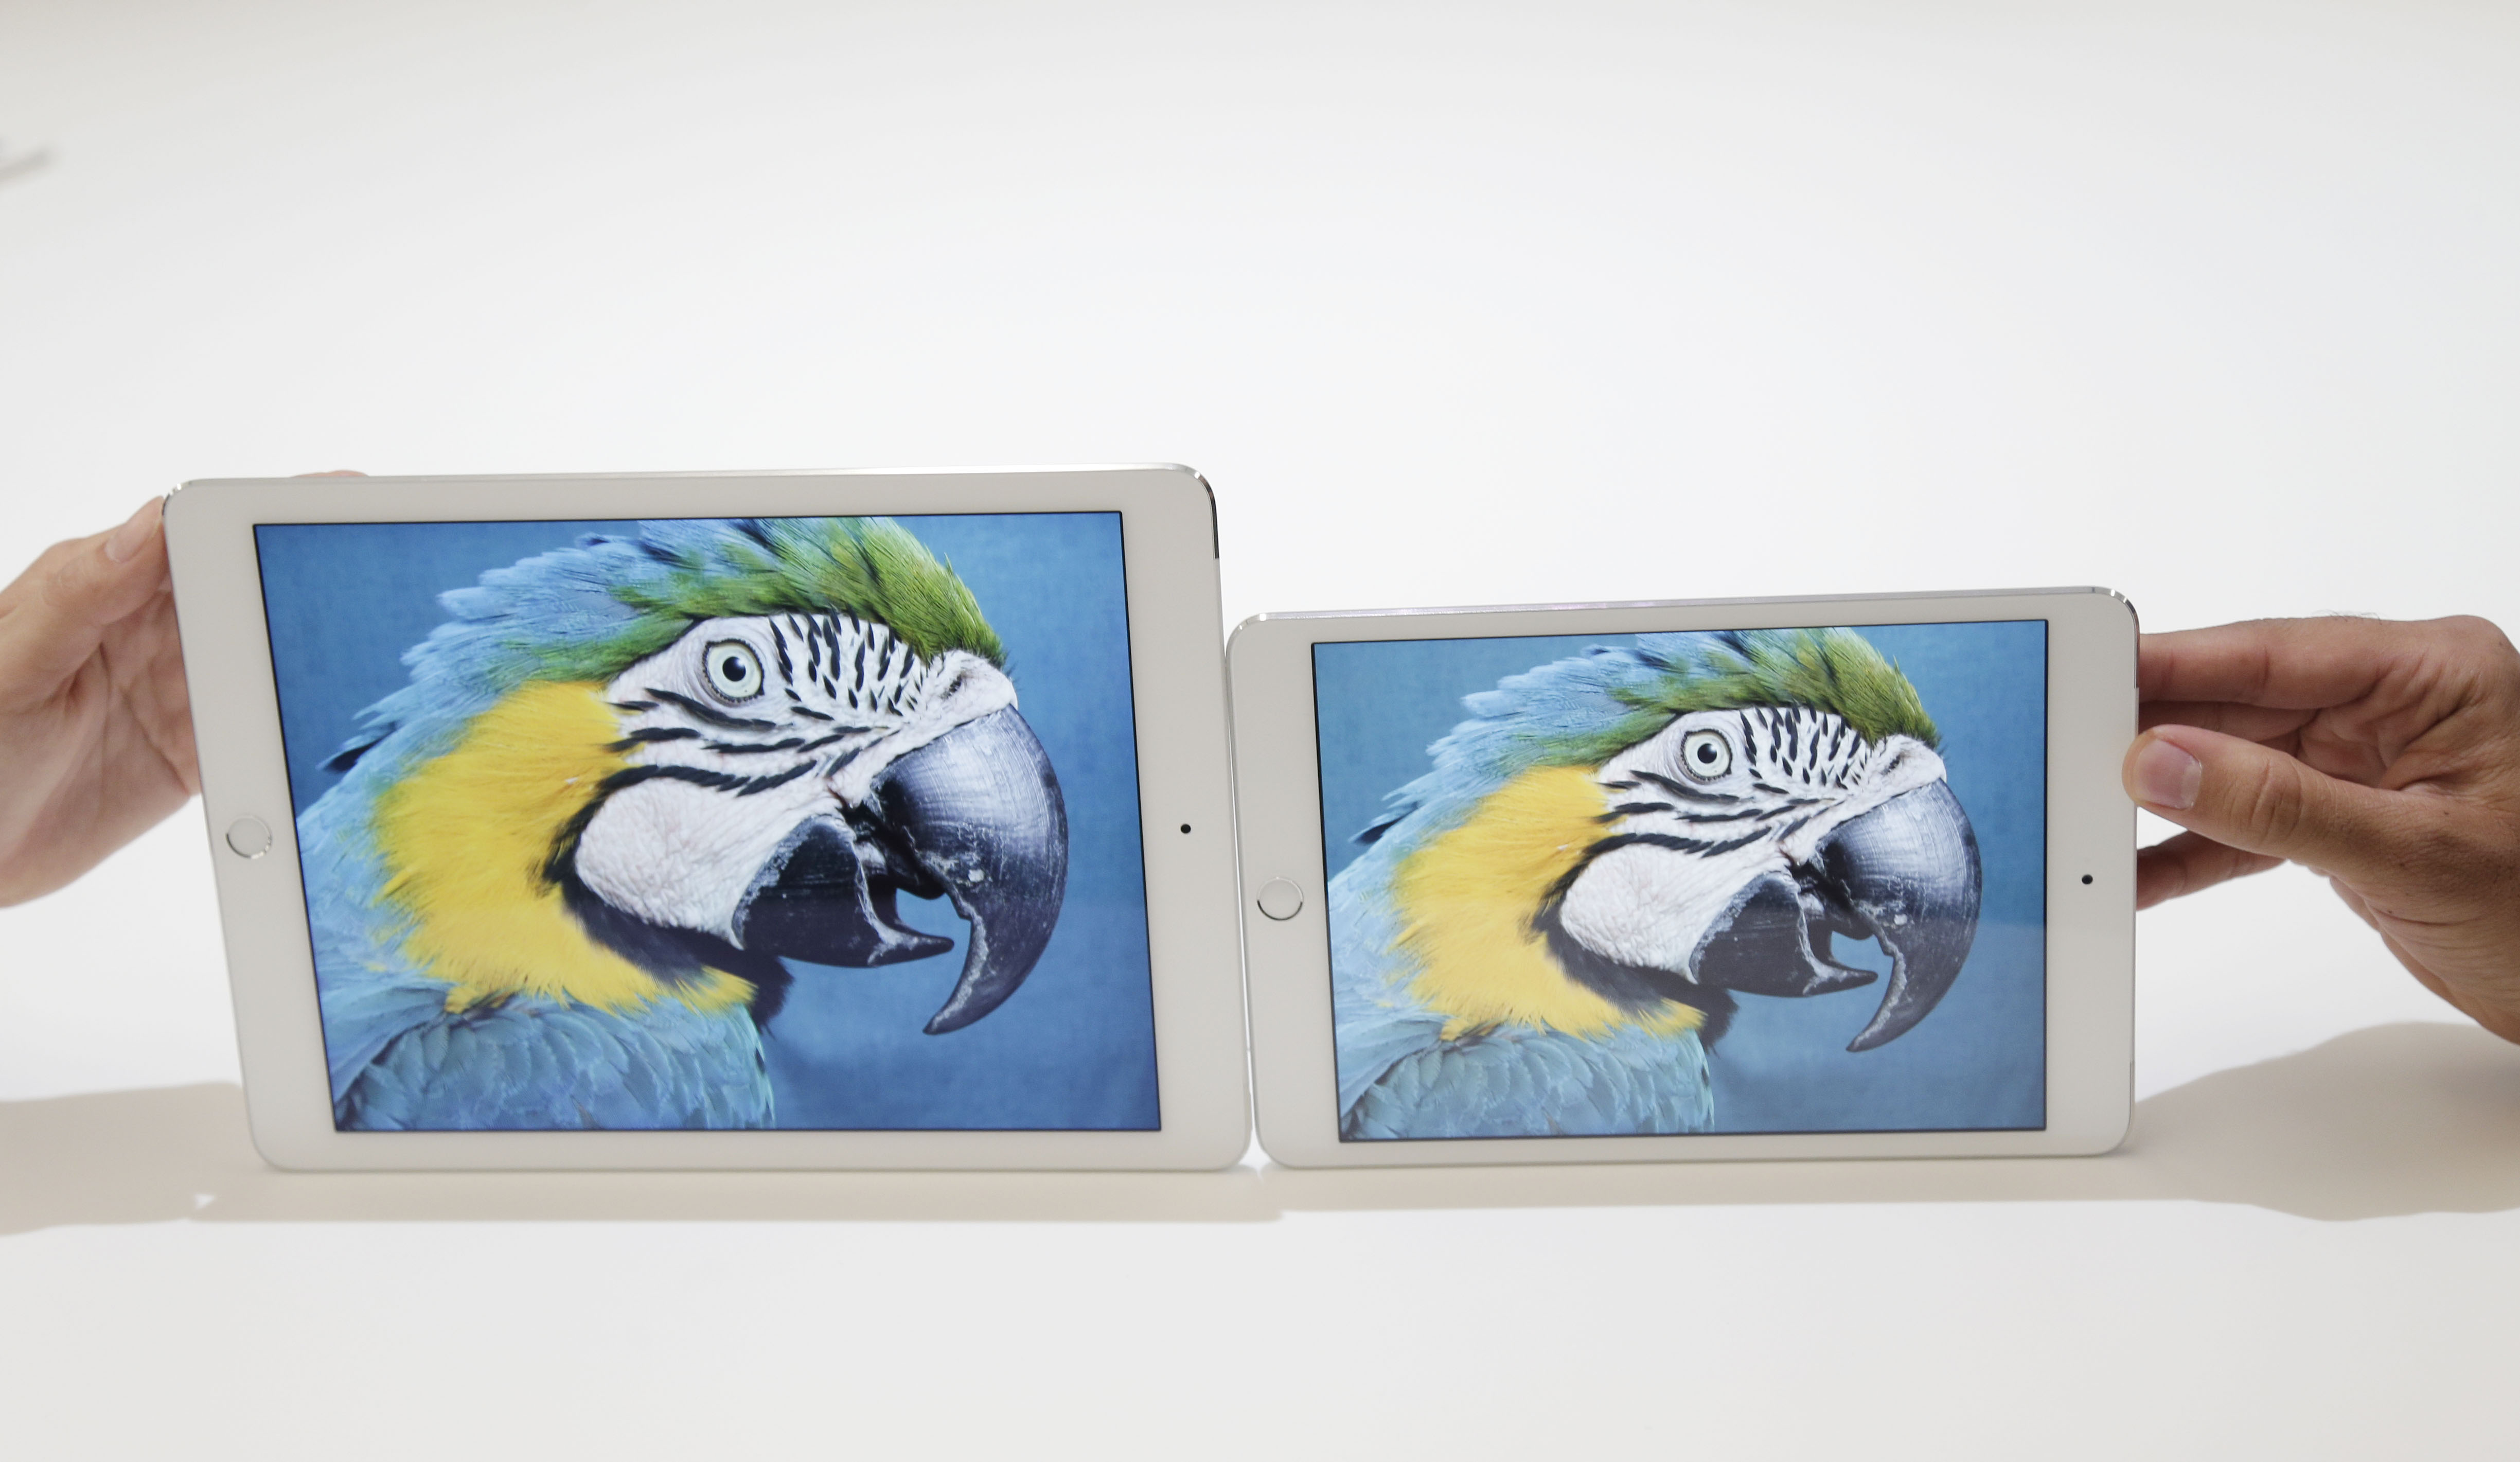 Στην Ελλάδα τα iPad Air 2 και iPad mini 3 «μέχρι το τέλος Οκτωβρίου»